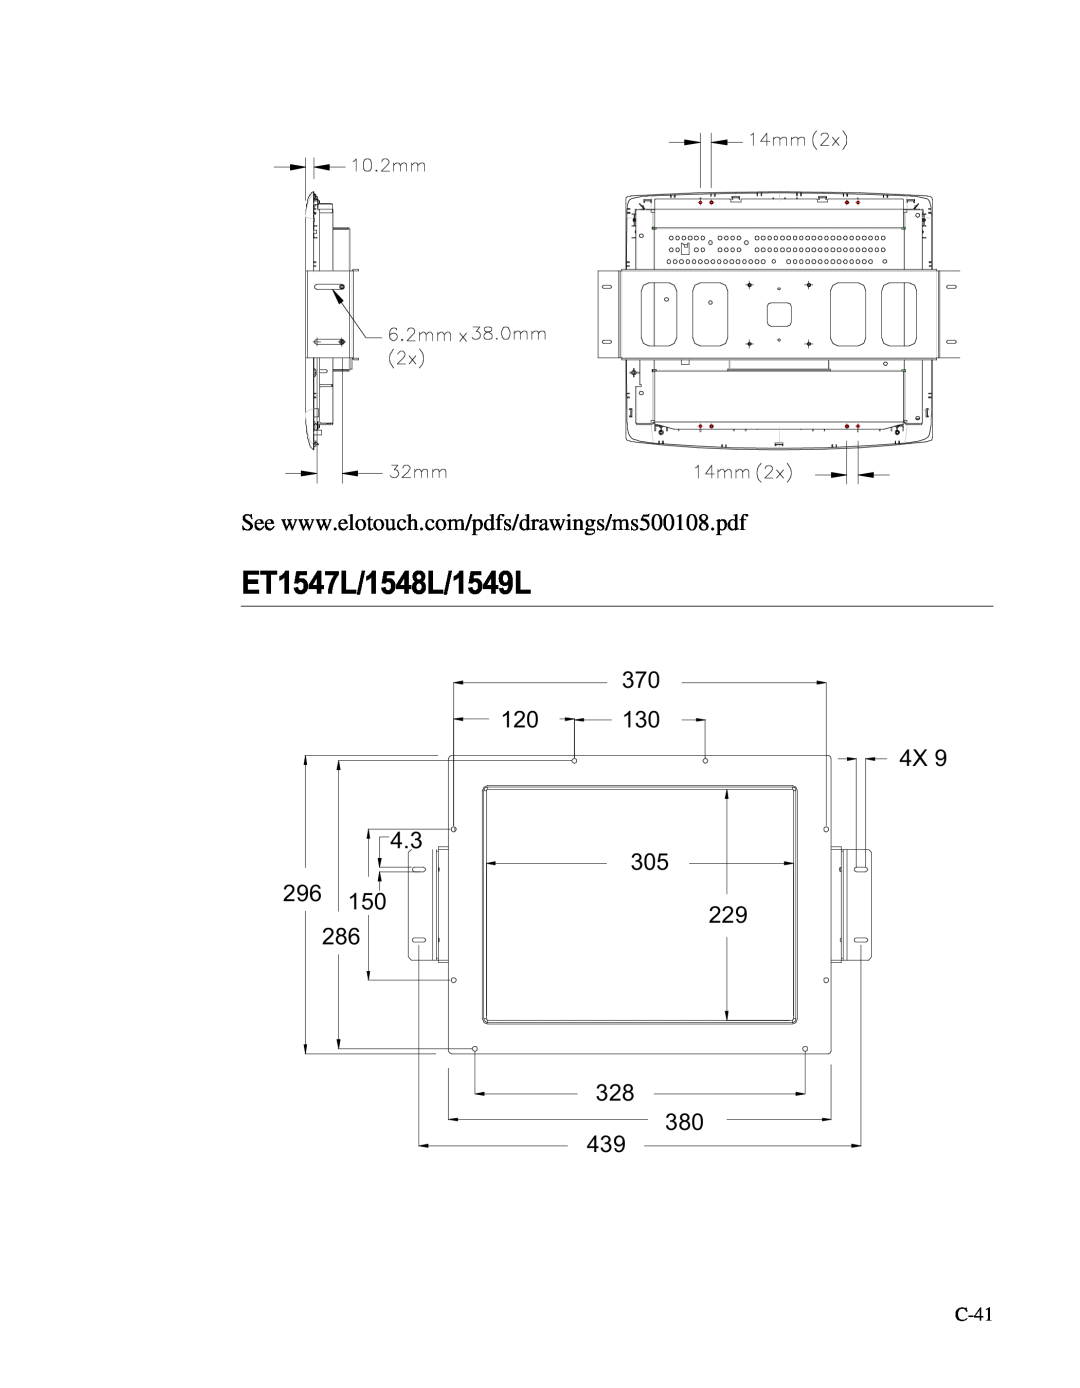 Elo TouchSystems LCD manual ET1547L/1548L/1549L, C-41 